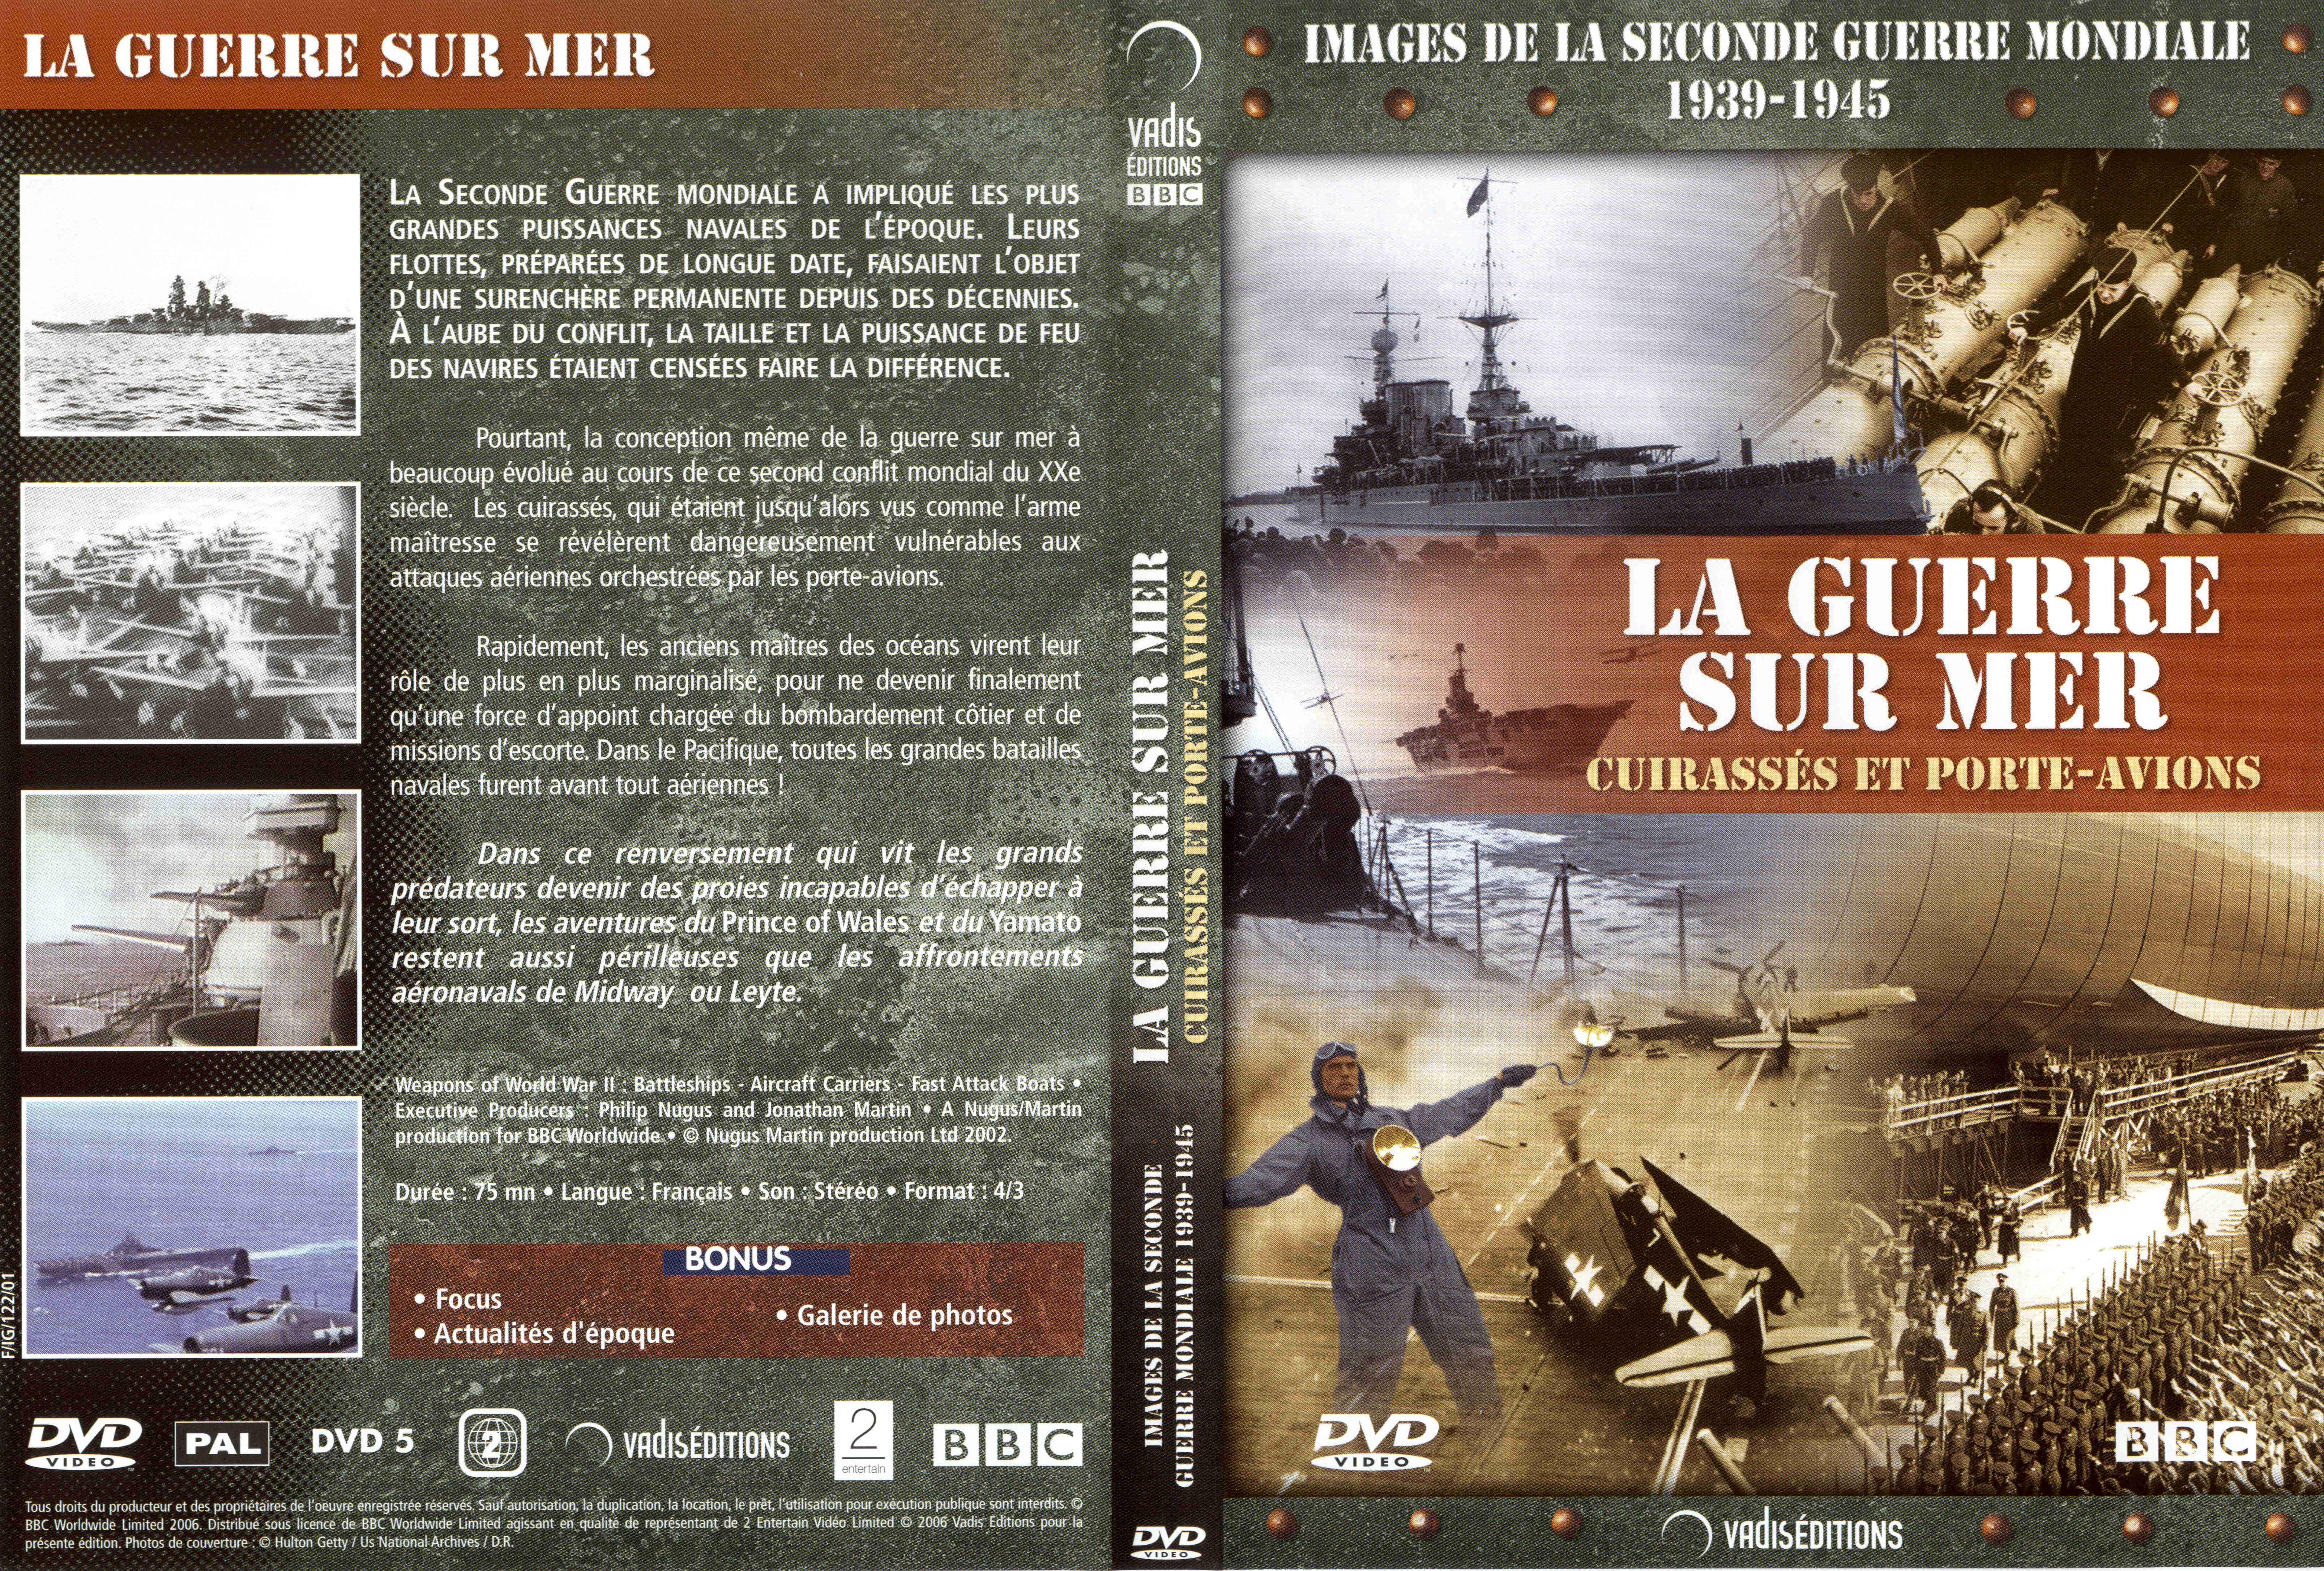 Jaquette DVD Images de la seconde guerre mondiale - La guerre sur mer